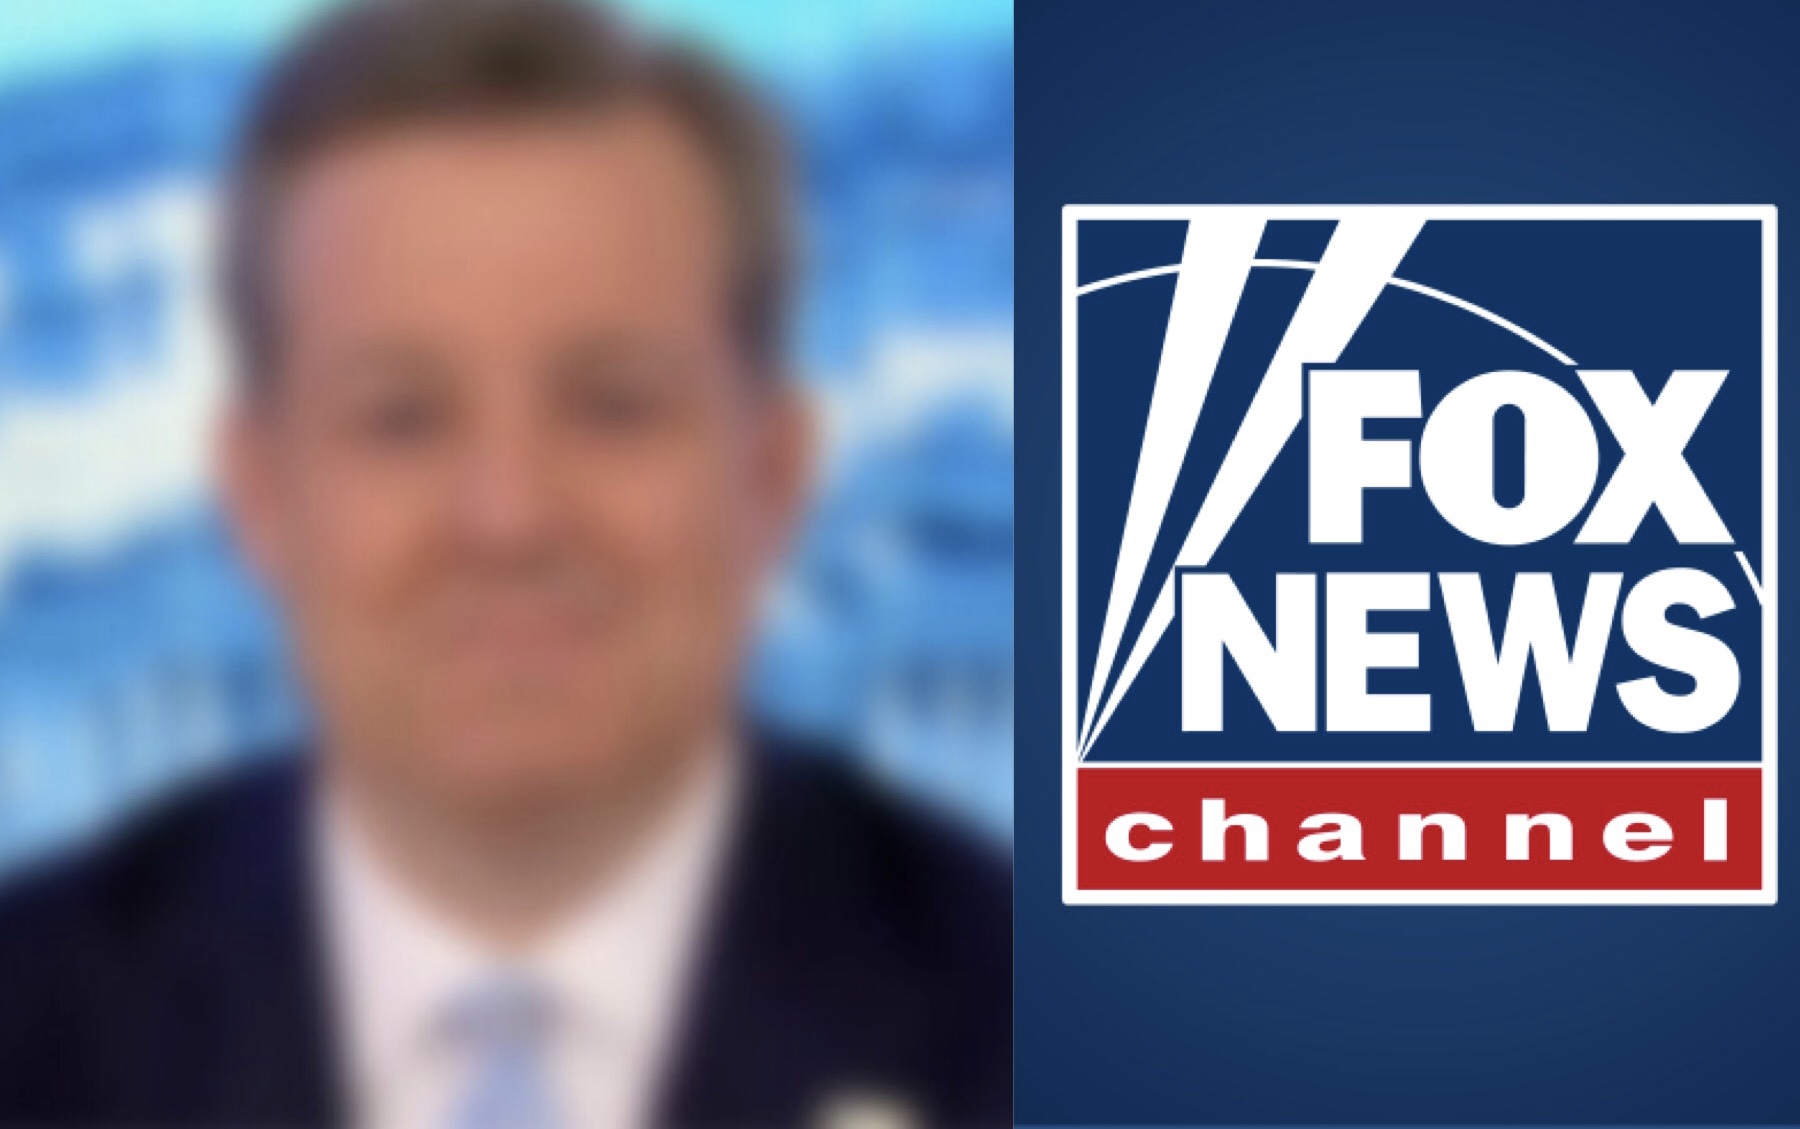 Fox News despidió famoso presentador por “mala conducta sexual”